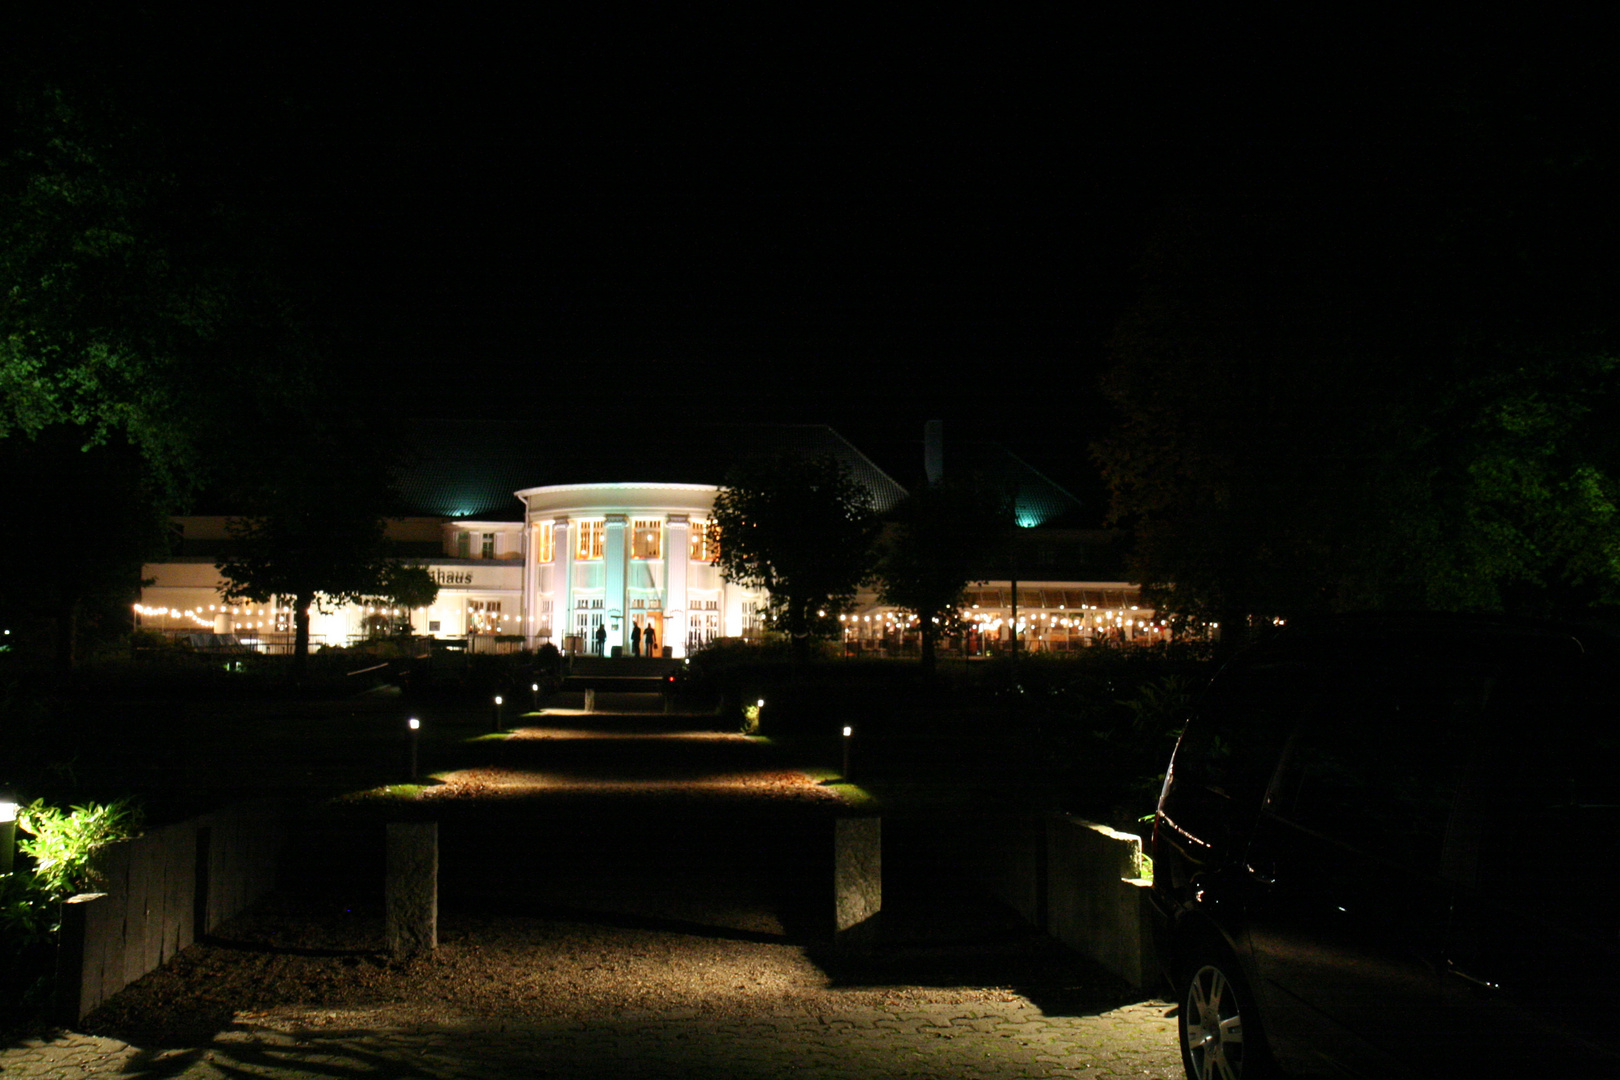 Brauhaus bei Nacht